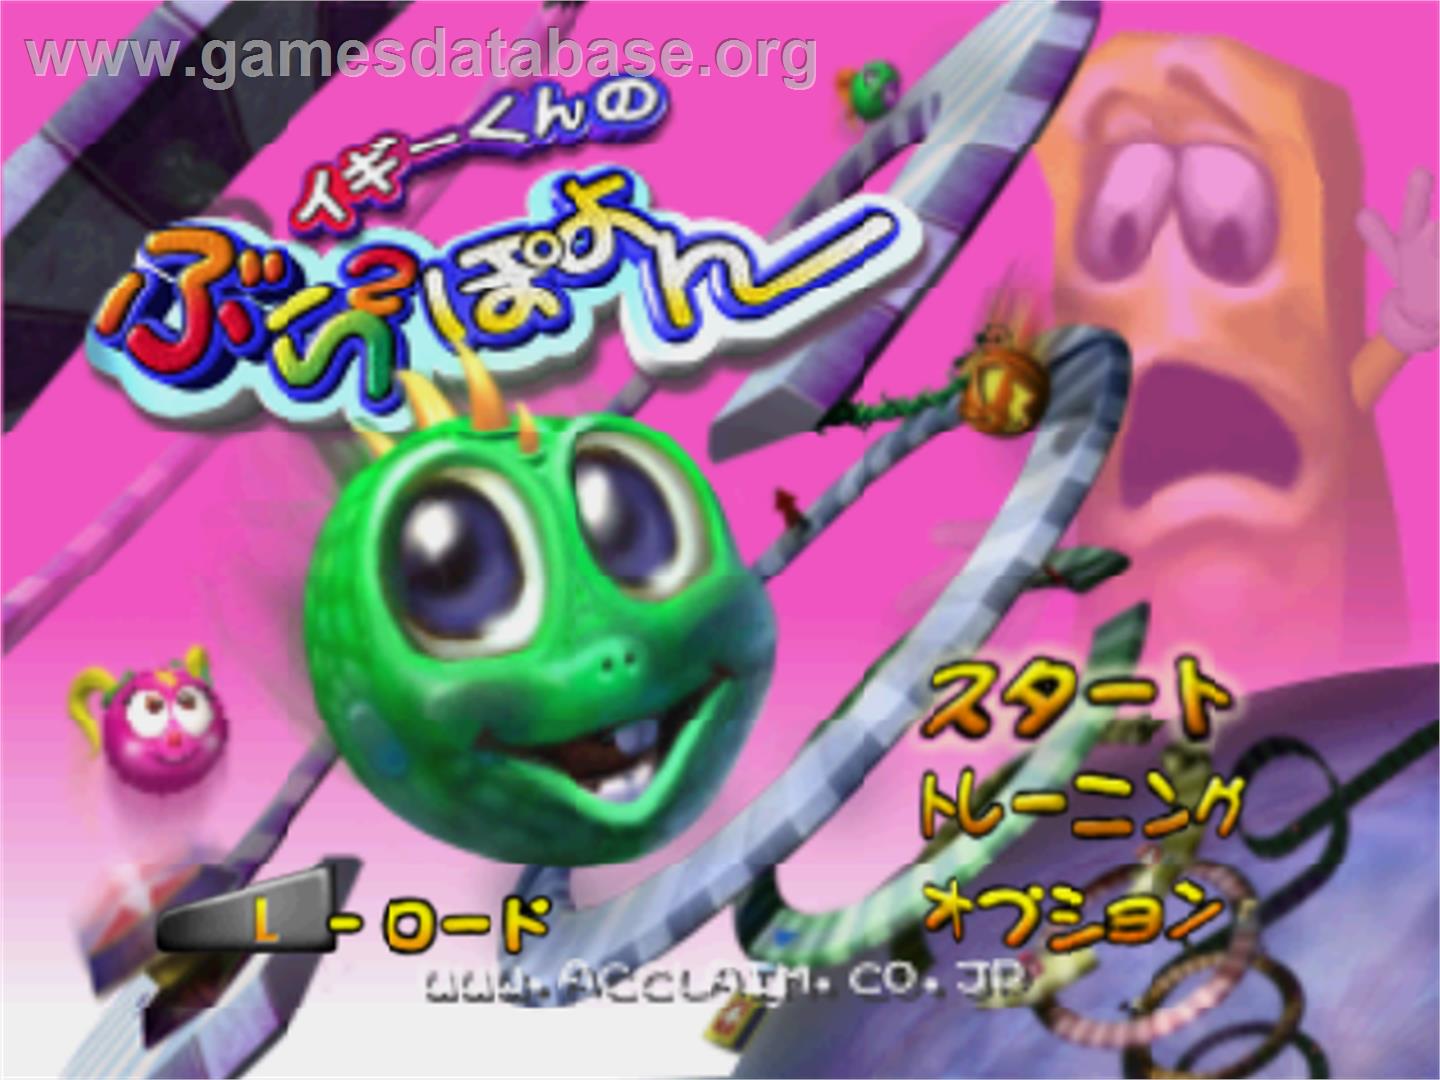 Iggy-kun no Bura 2 Poyon - Nintendo N64 - Artwork - Title Screen